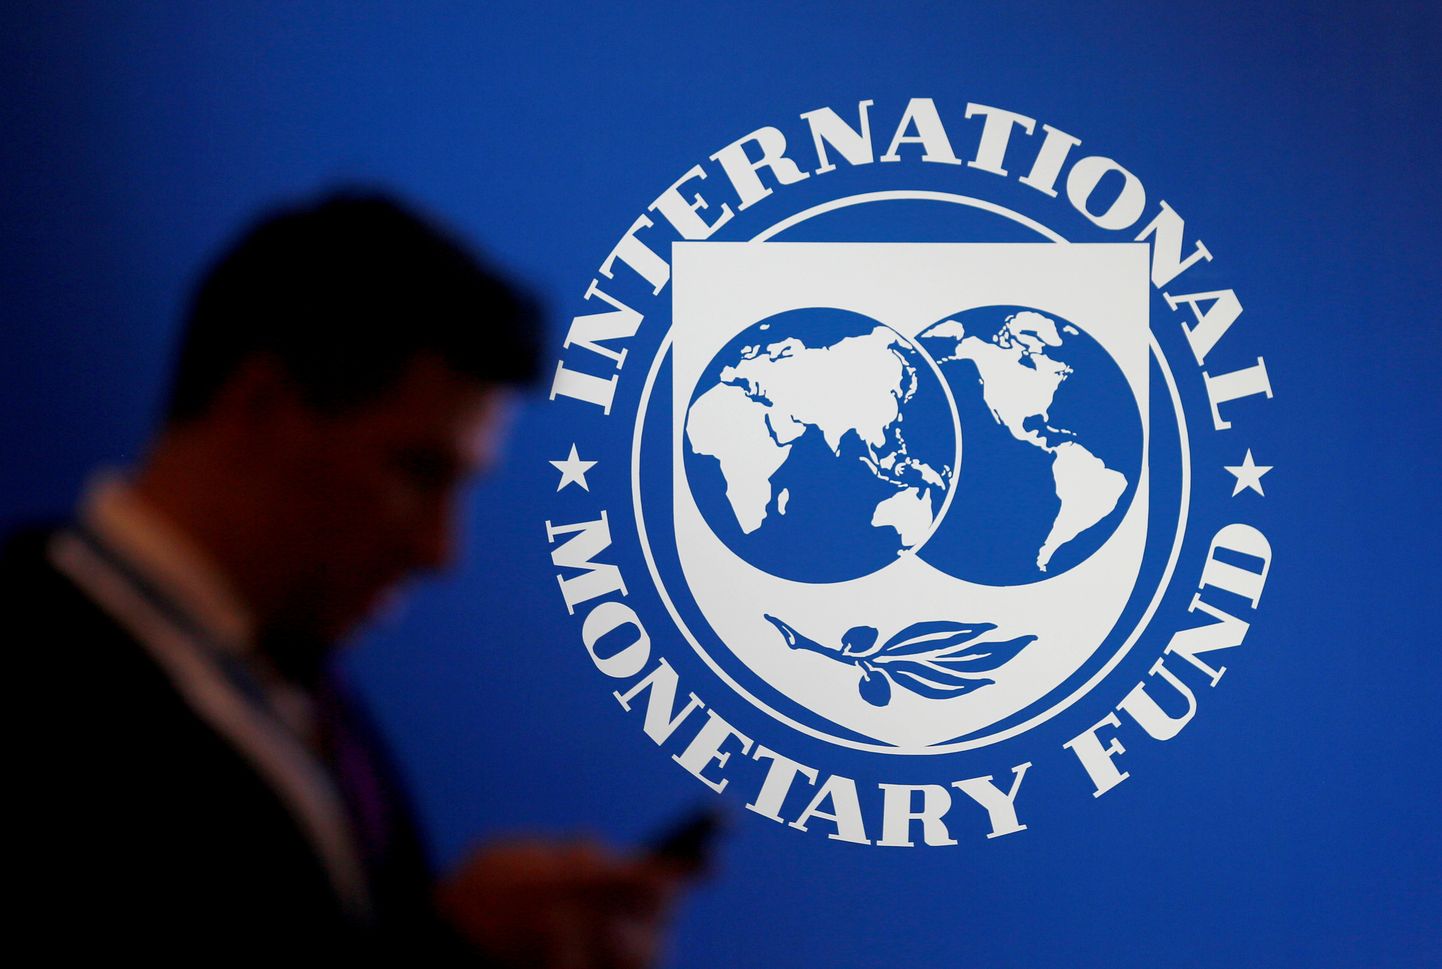 Rahvusvahelise Valuutafondi (IMF) logo.